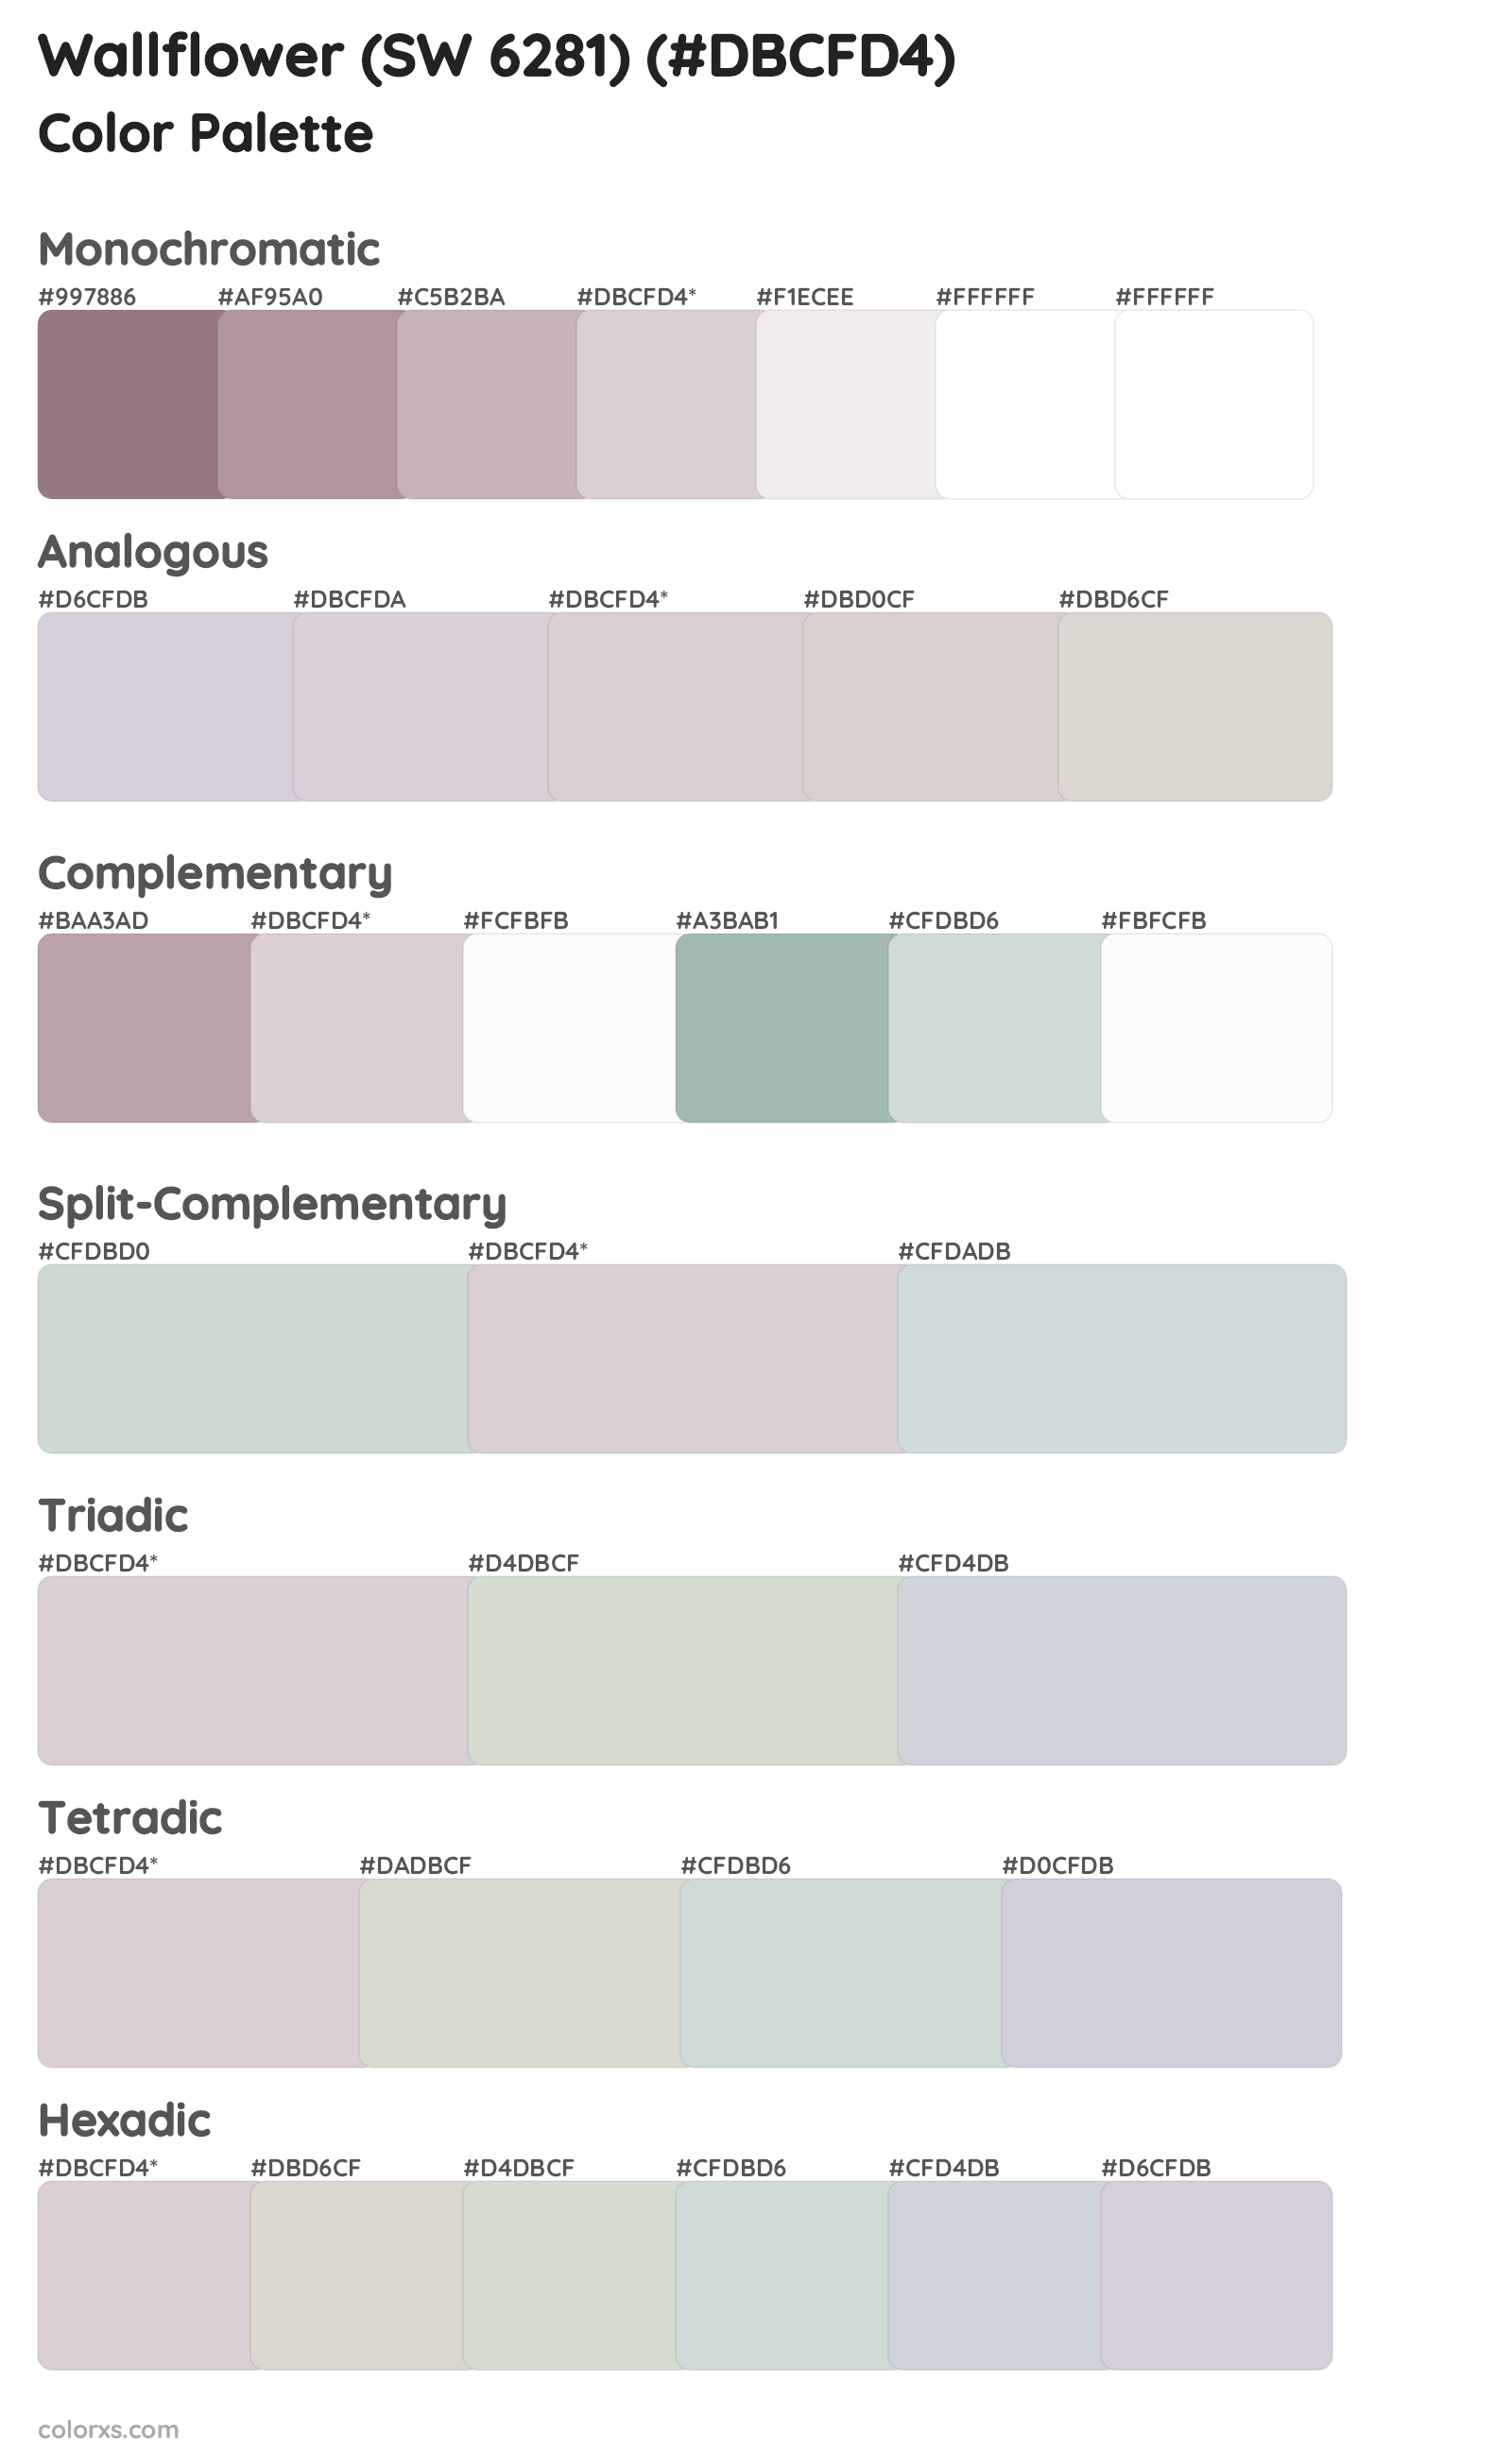 Wallflower (SW 6281) Color Scheme Palettes